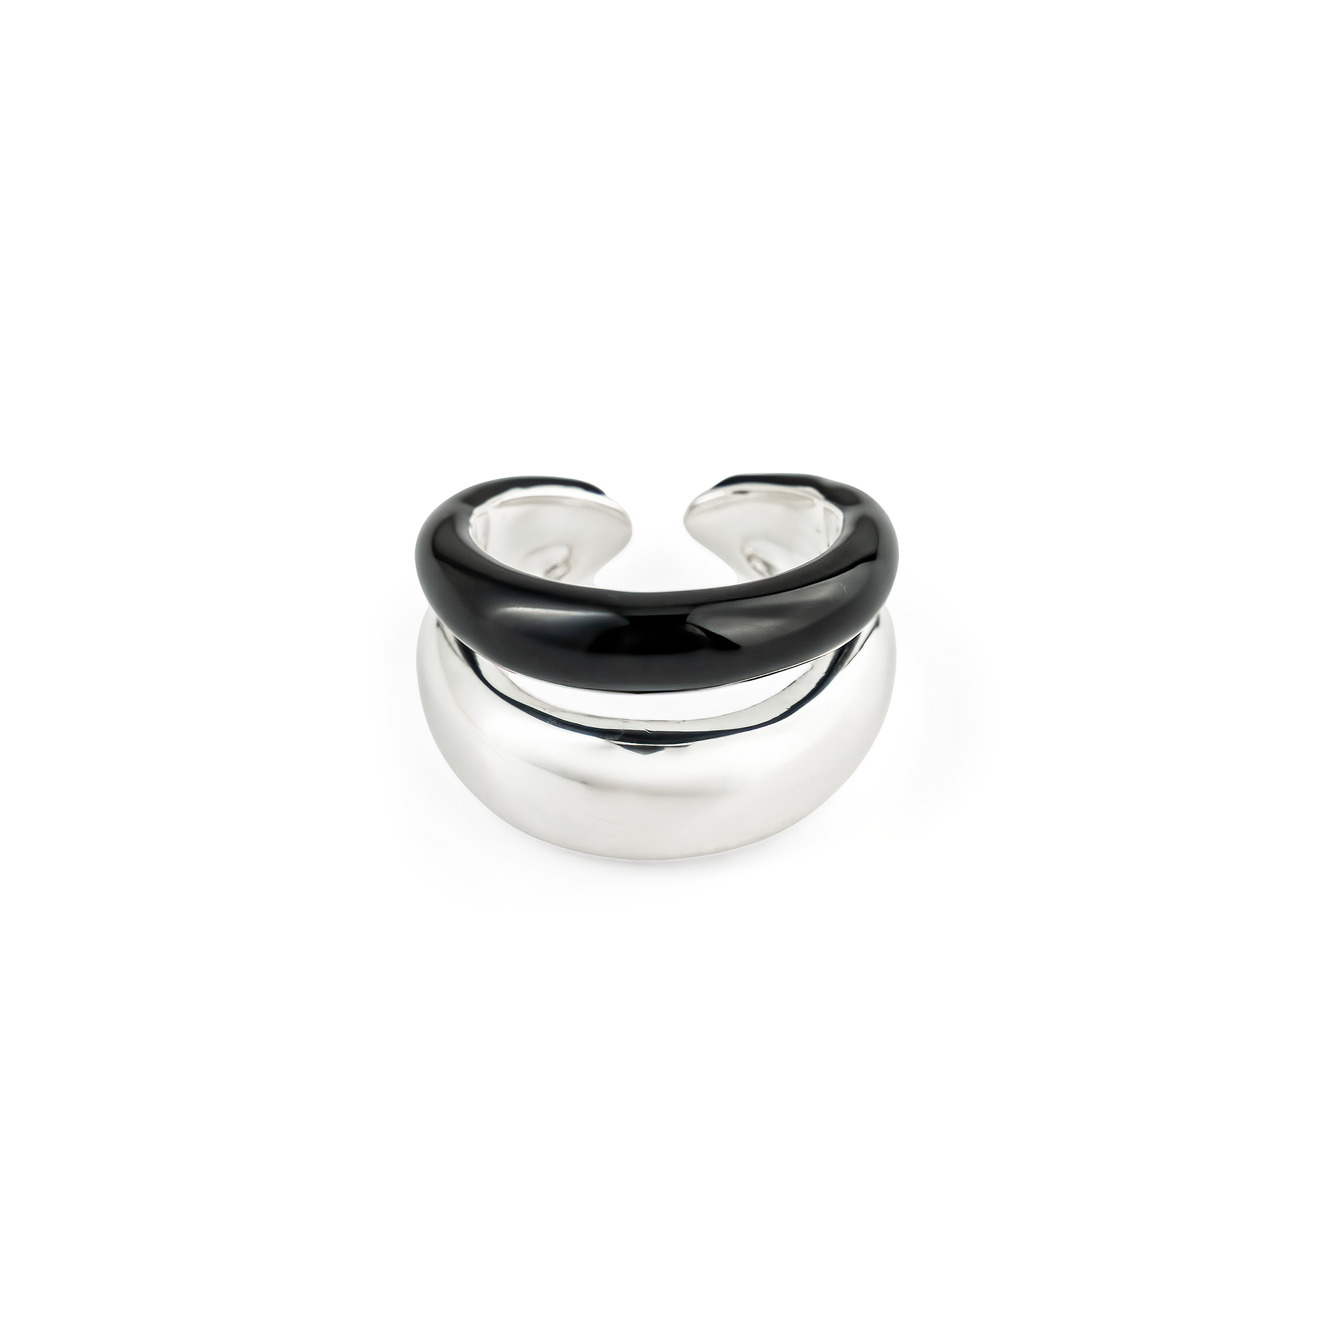 Philippe Audibert Кольцо Kyler с серебряным покрытием с черной эмалью philippe audibert кольцо neal ring с серебряным покрытием с черной эмалью